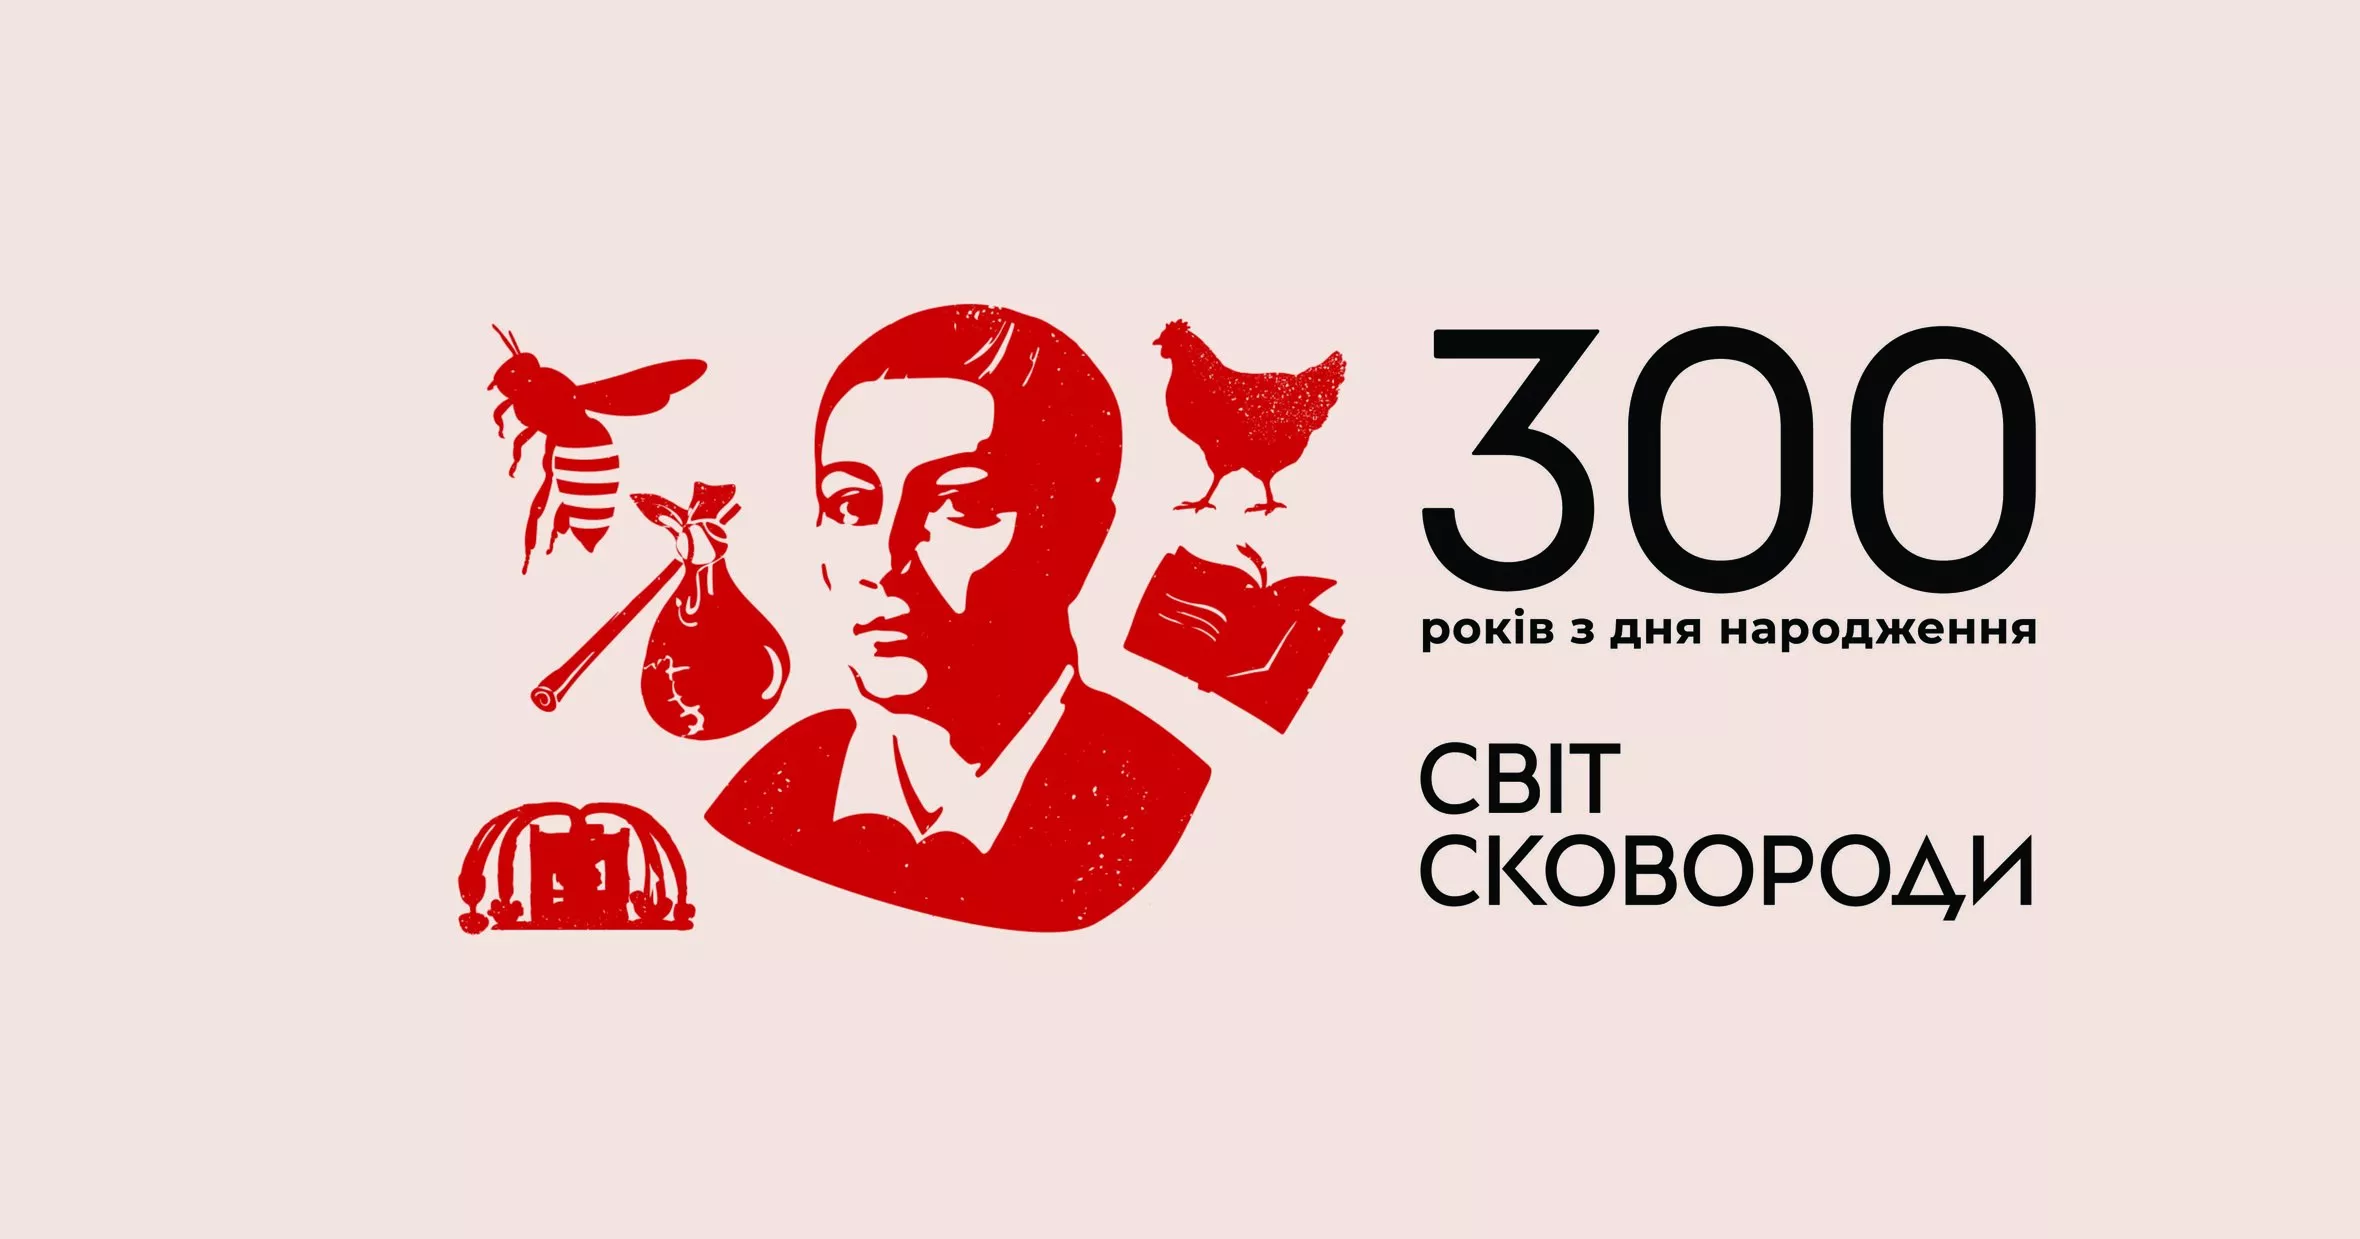 У Києві відкриють виставку «Світ Сковороди»